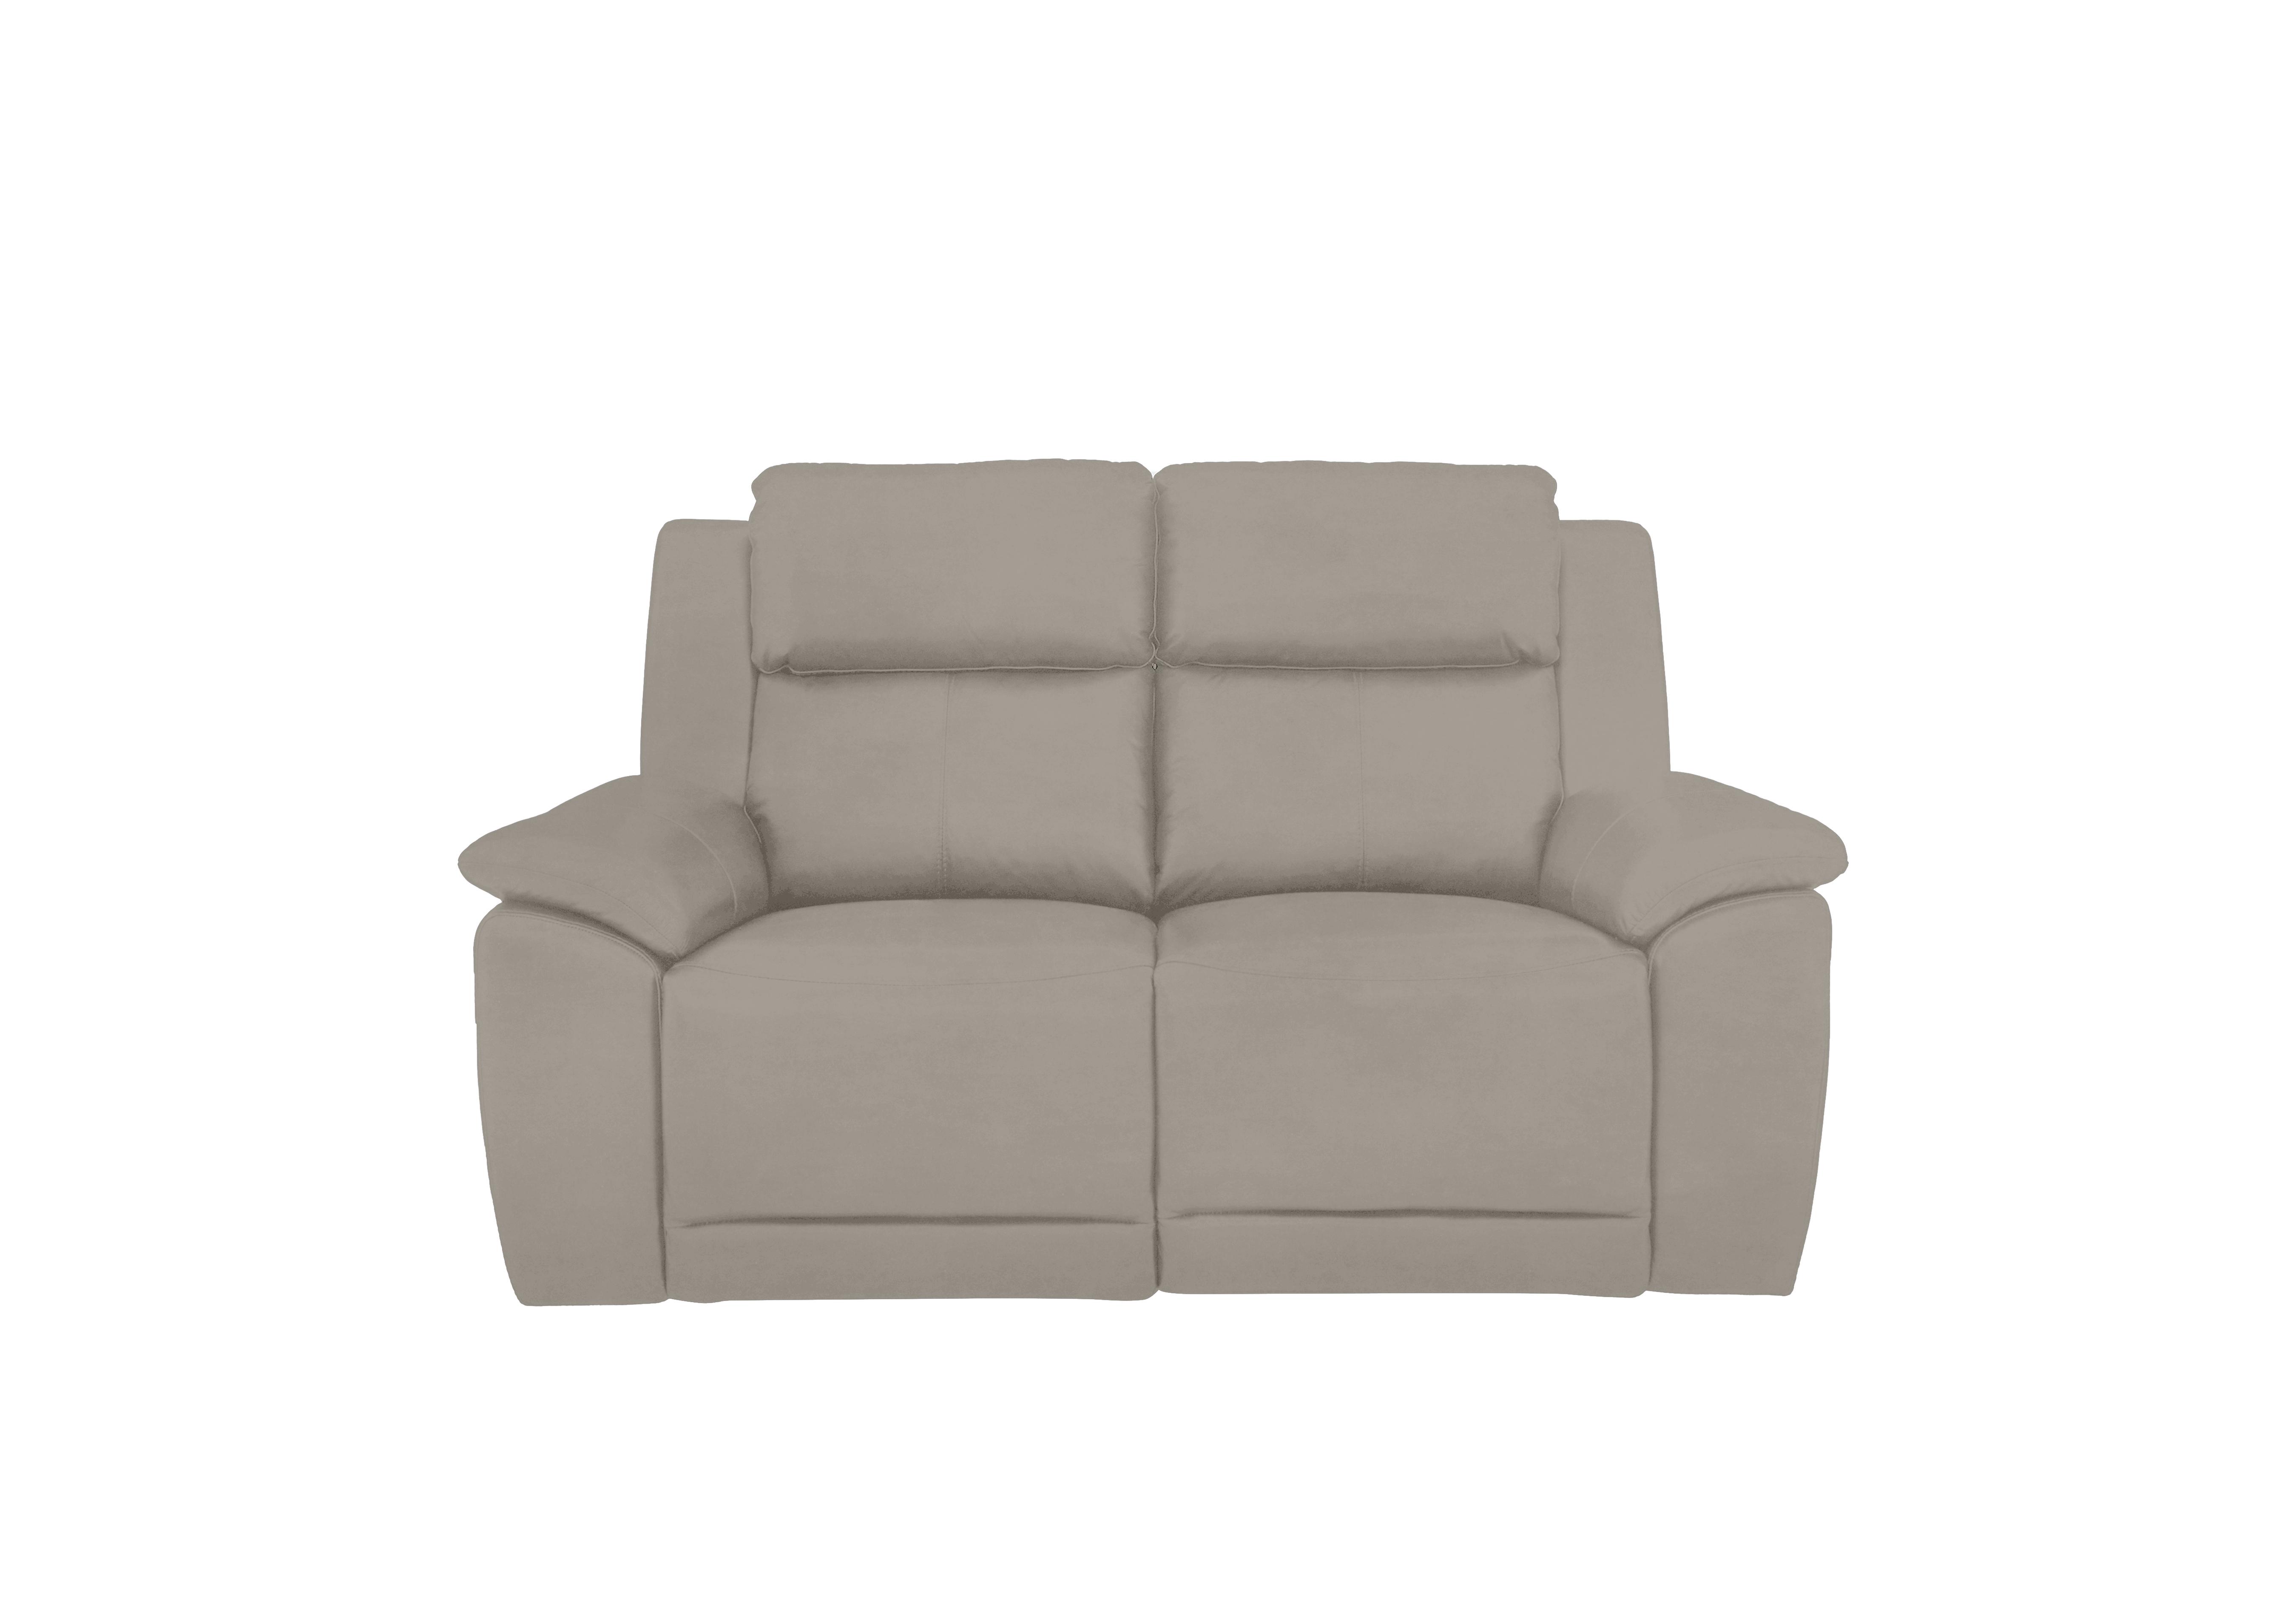 Utah 2 Seater Fabric Sofa in Velvet Sand Vv-0303 on Furniture Village